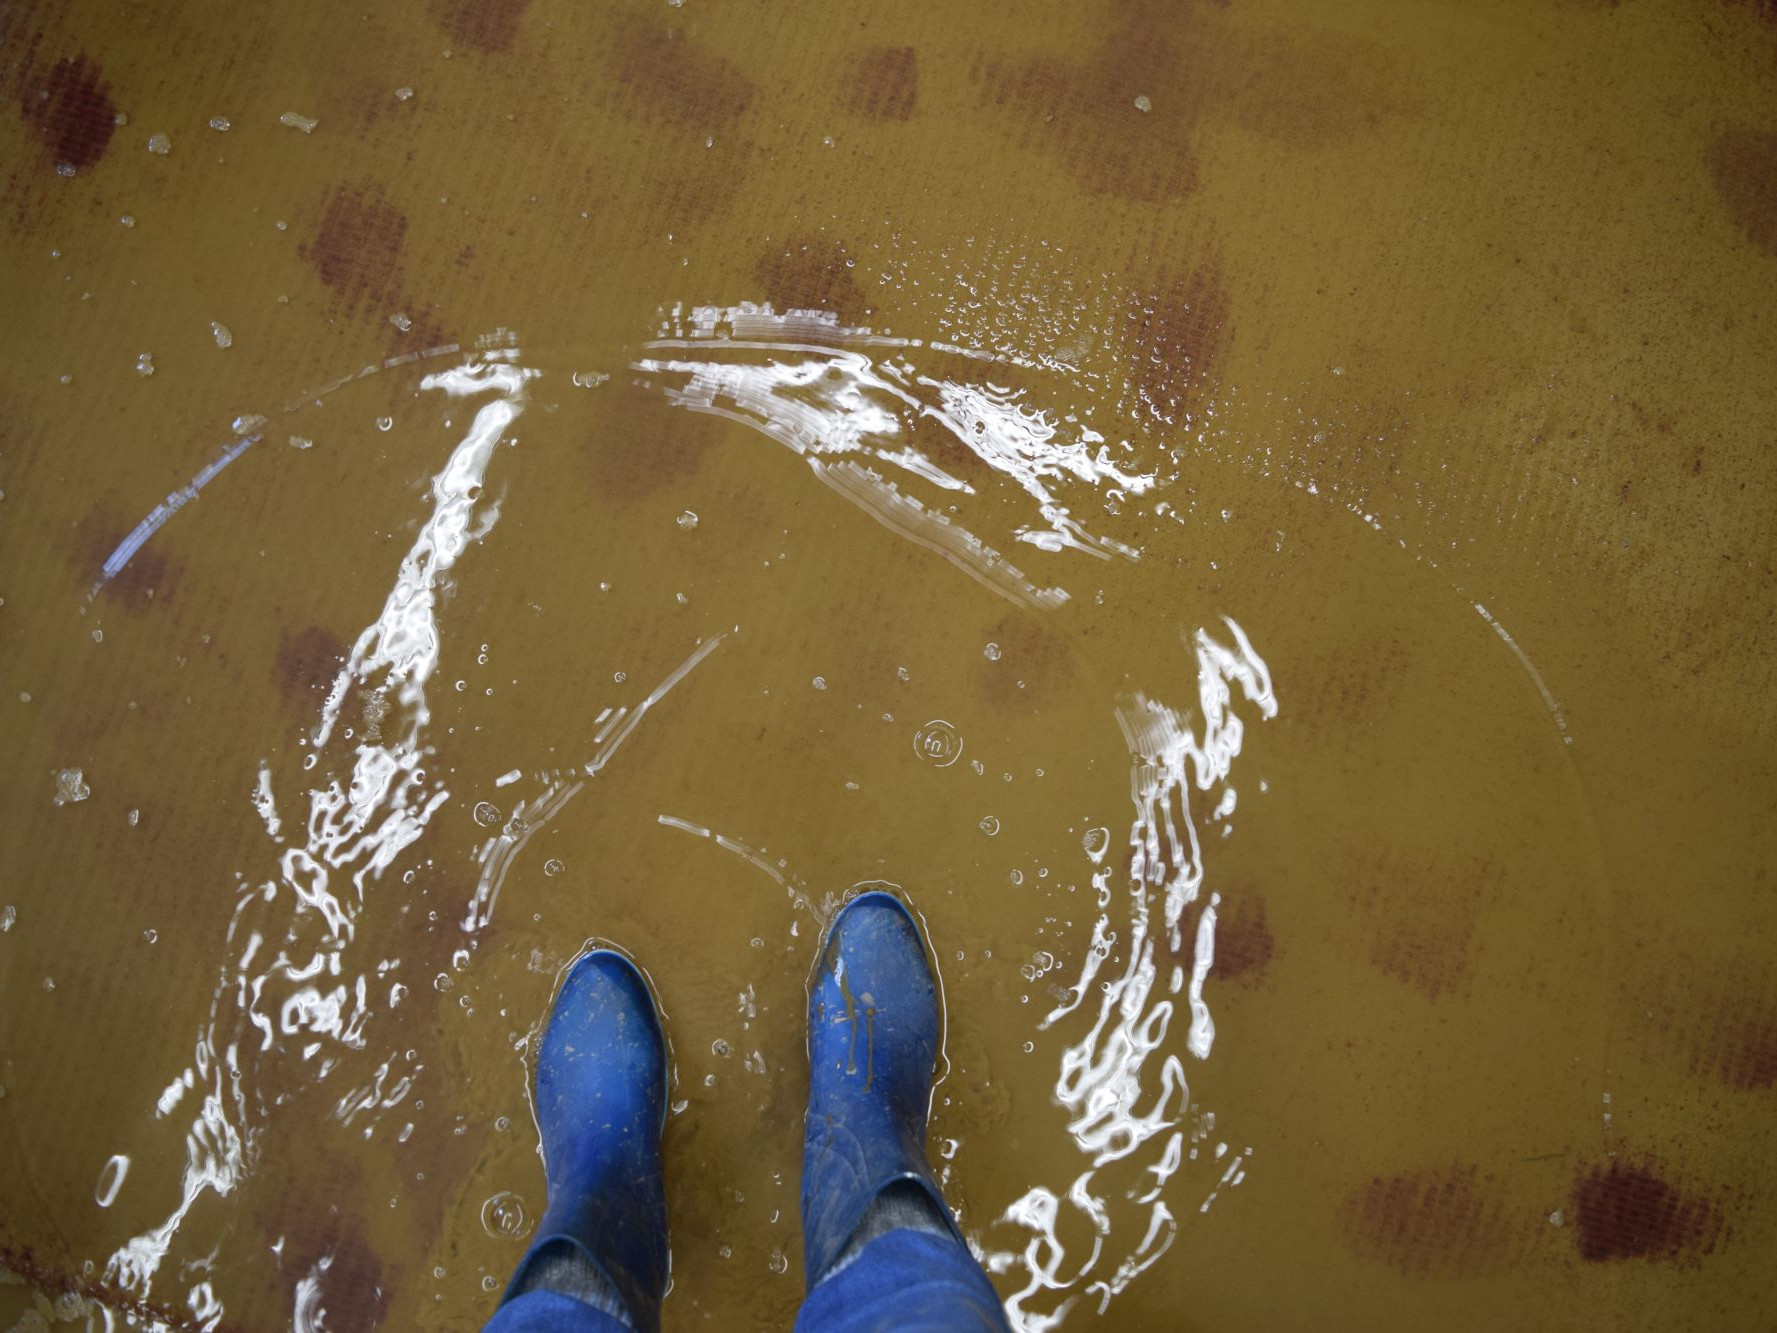 Eine Person steht mit blauen Stiefeln auf einem überfluteten Teppichboden im Wasser.